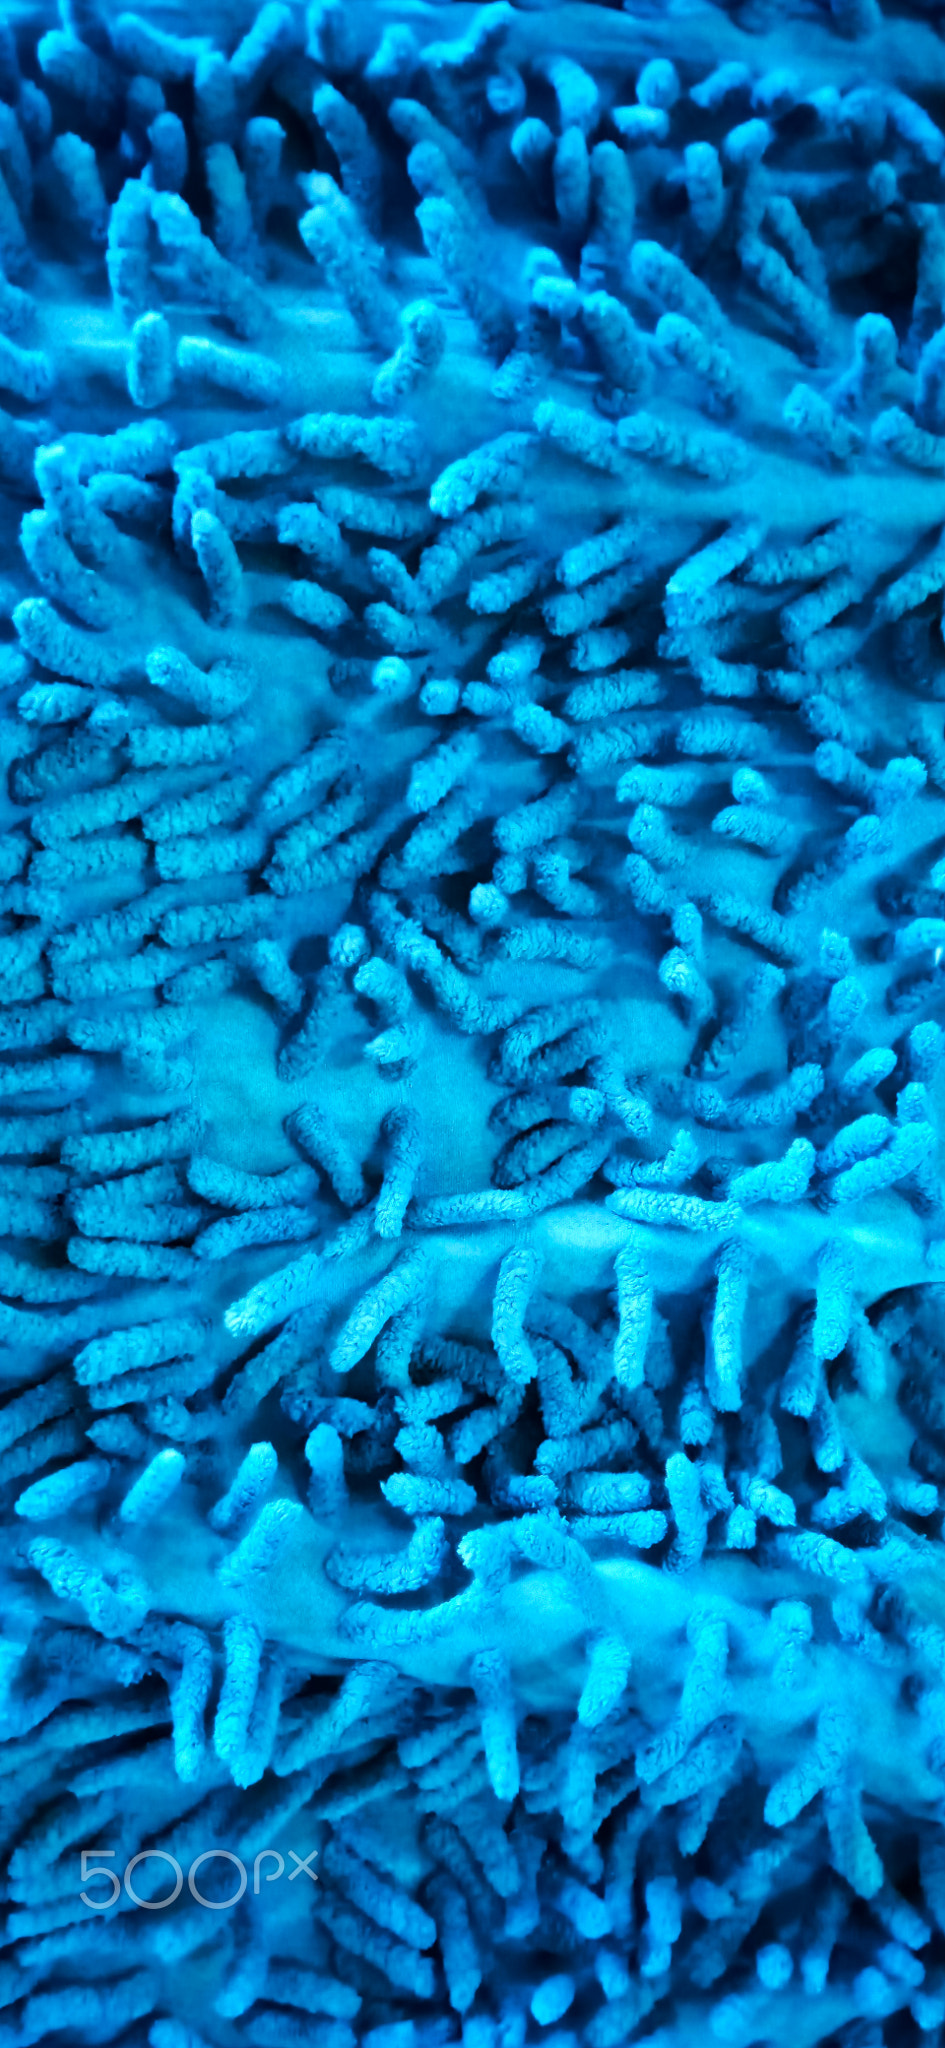 Noodle textured blue microfiber mop